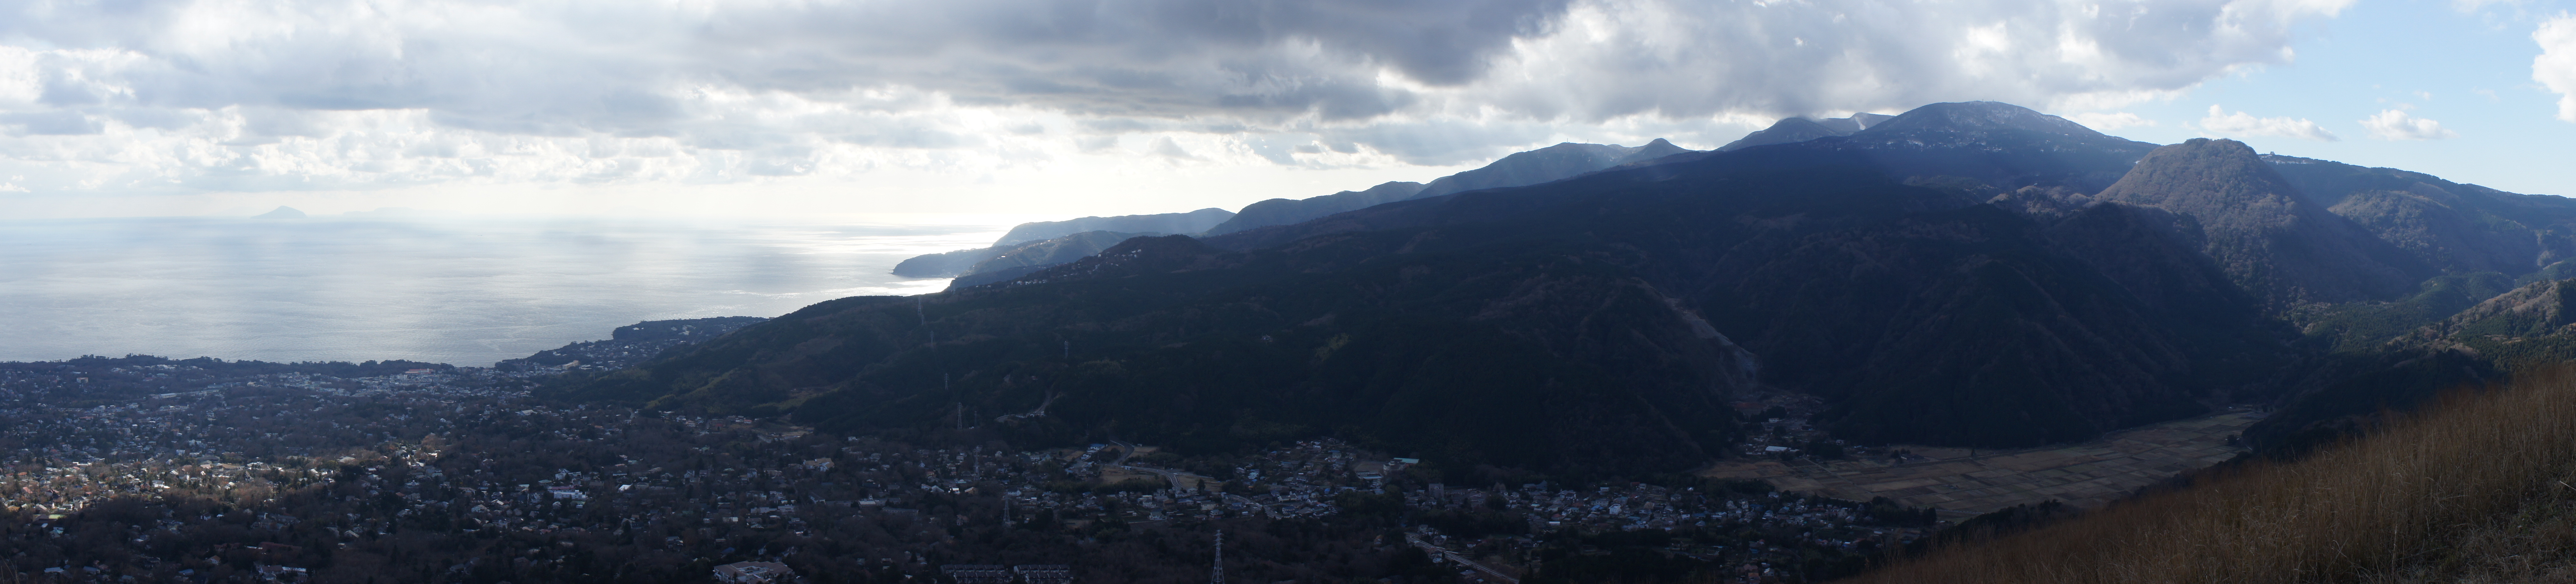 Panorama auf der Izu-Halbinsel. Links: Die Insel To-shima, rechts: das Amagi-Bergmassiv